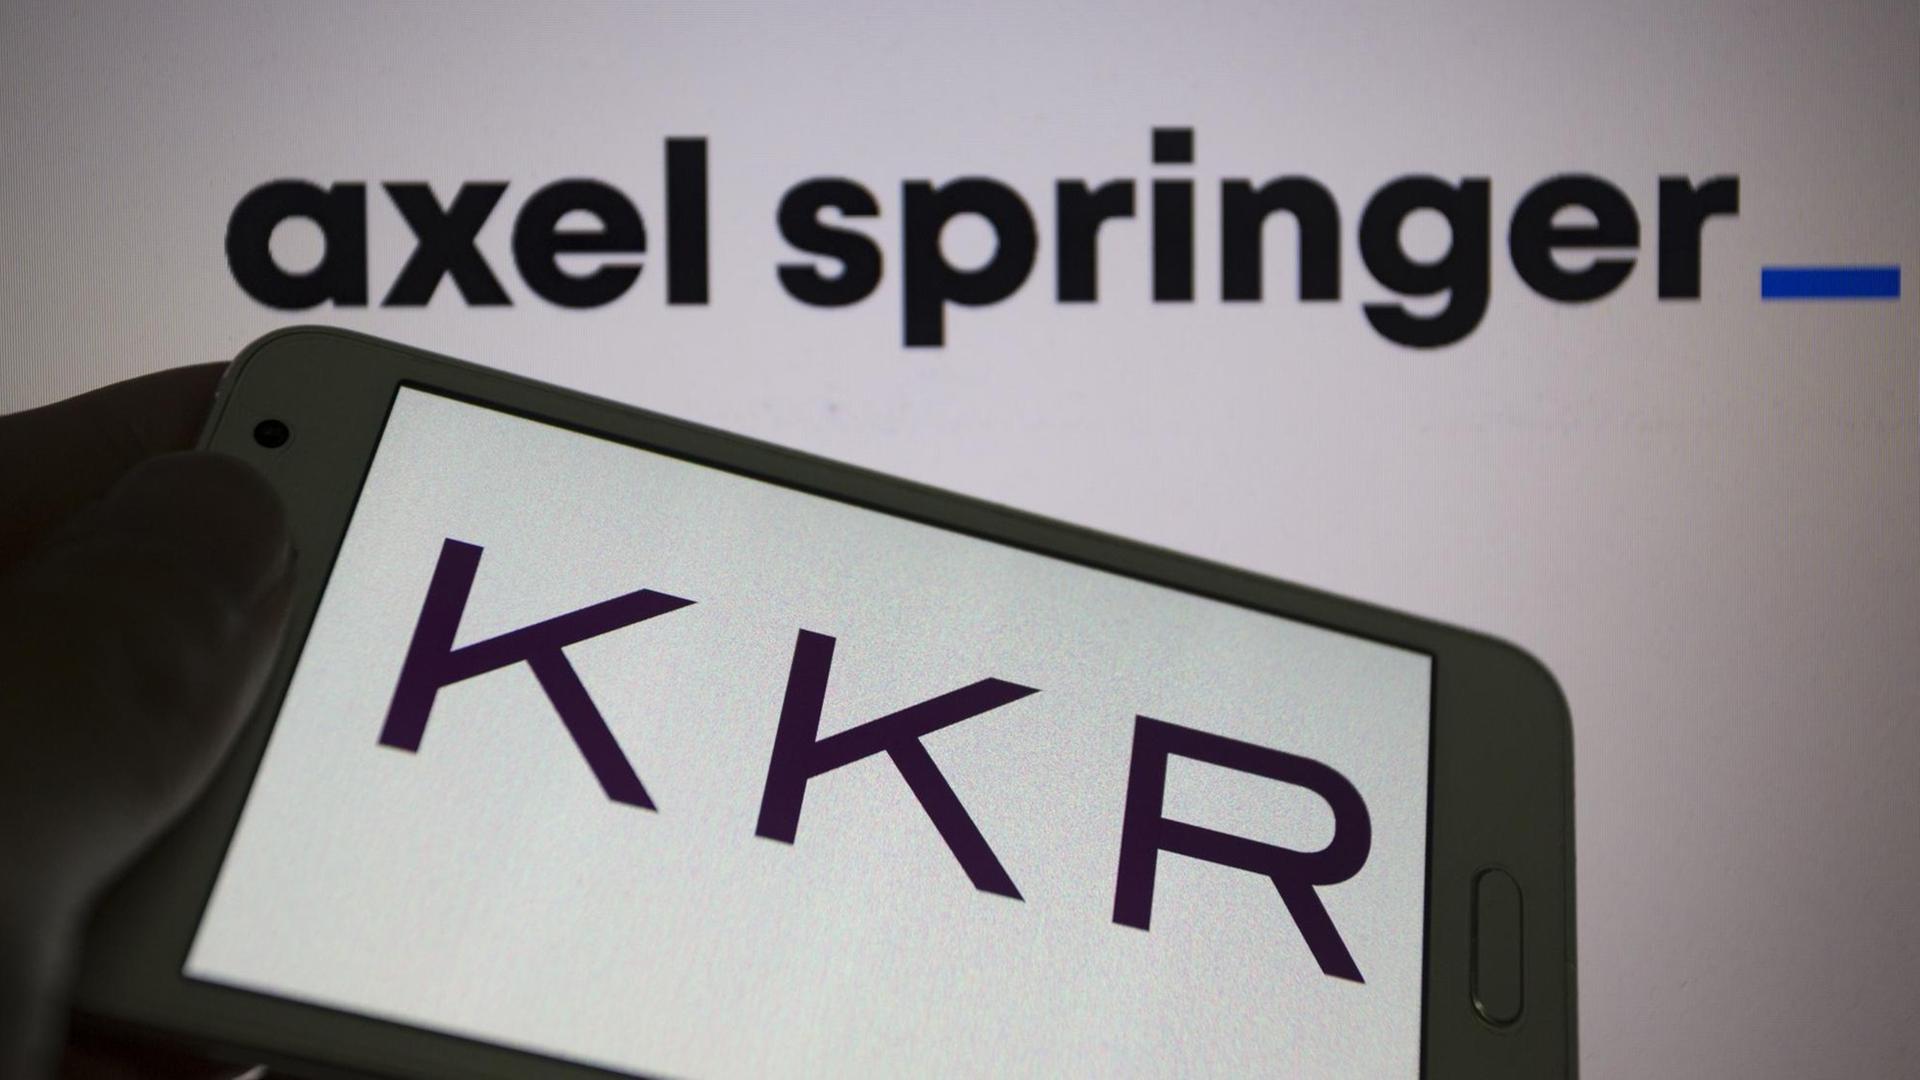 Das Logo von KKR (Kohlberg Kravis Roberts & Co.) ist auf einem Smartphone zu sehen. Im Hintergrund ist auf einer Wand das Logo von Axel Springer zu sehen.